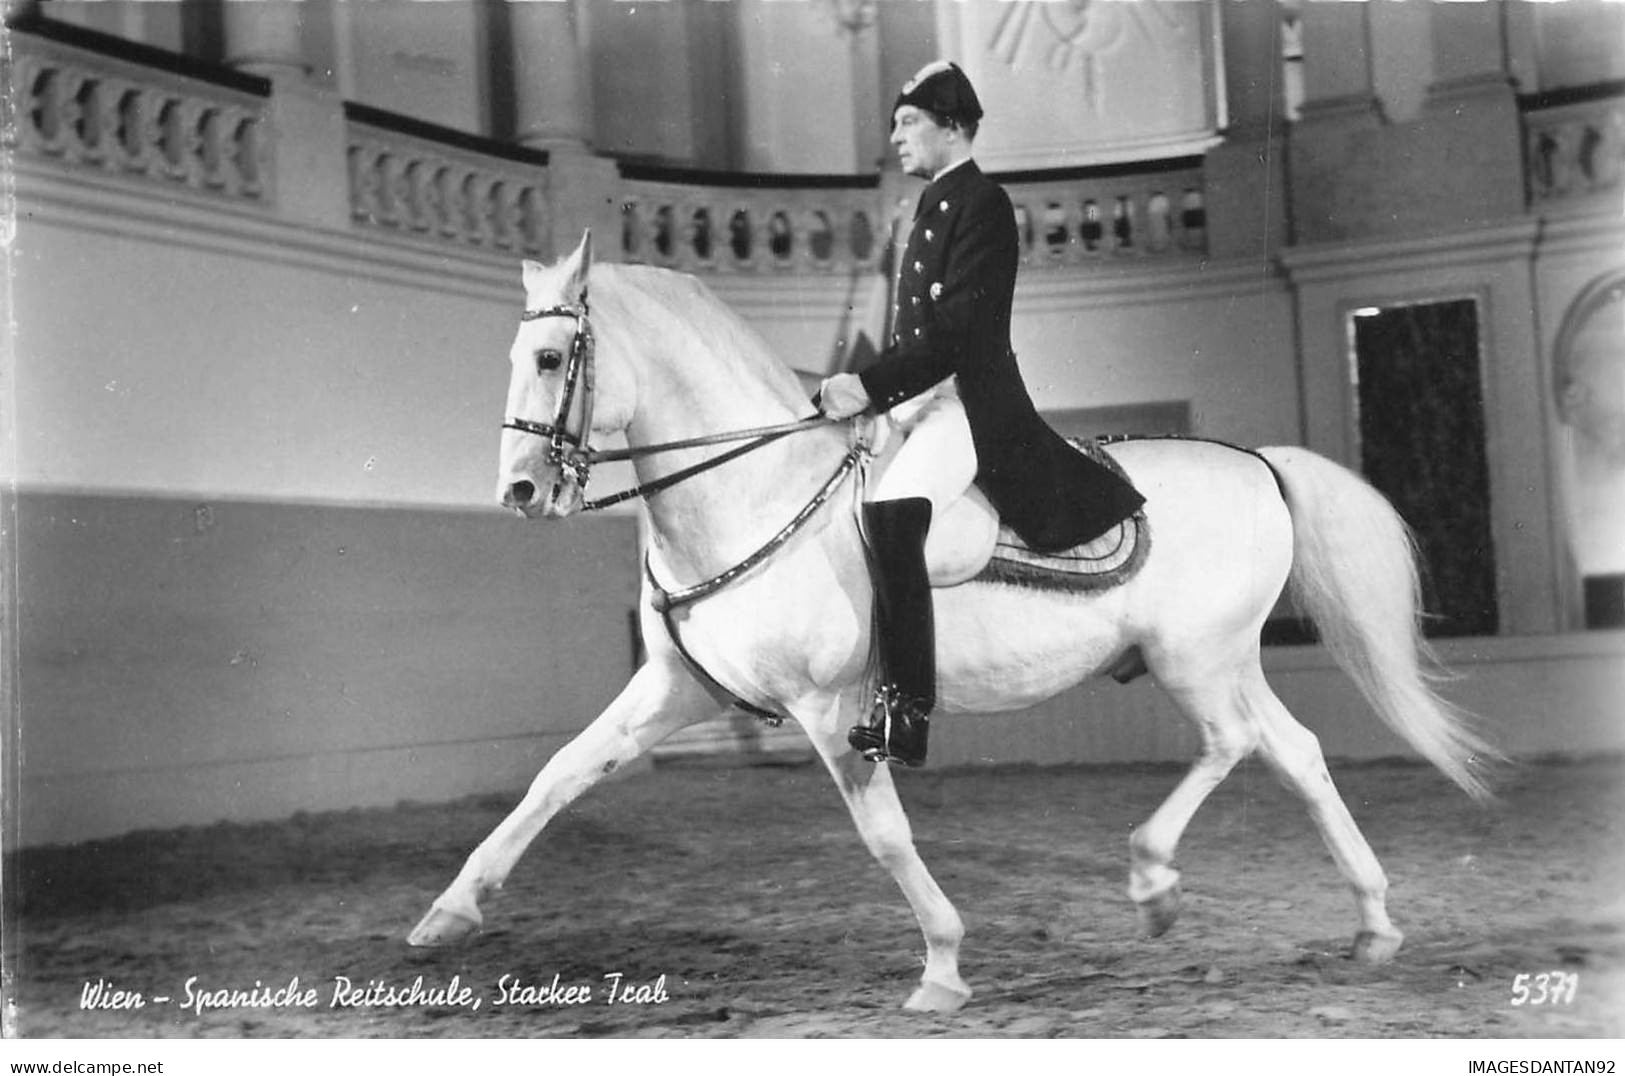 SPORT HIPPISME AB#MK181 WIEN SPANISCHE REITSCHULE CHEVAL BLANC - Horse Show